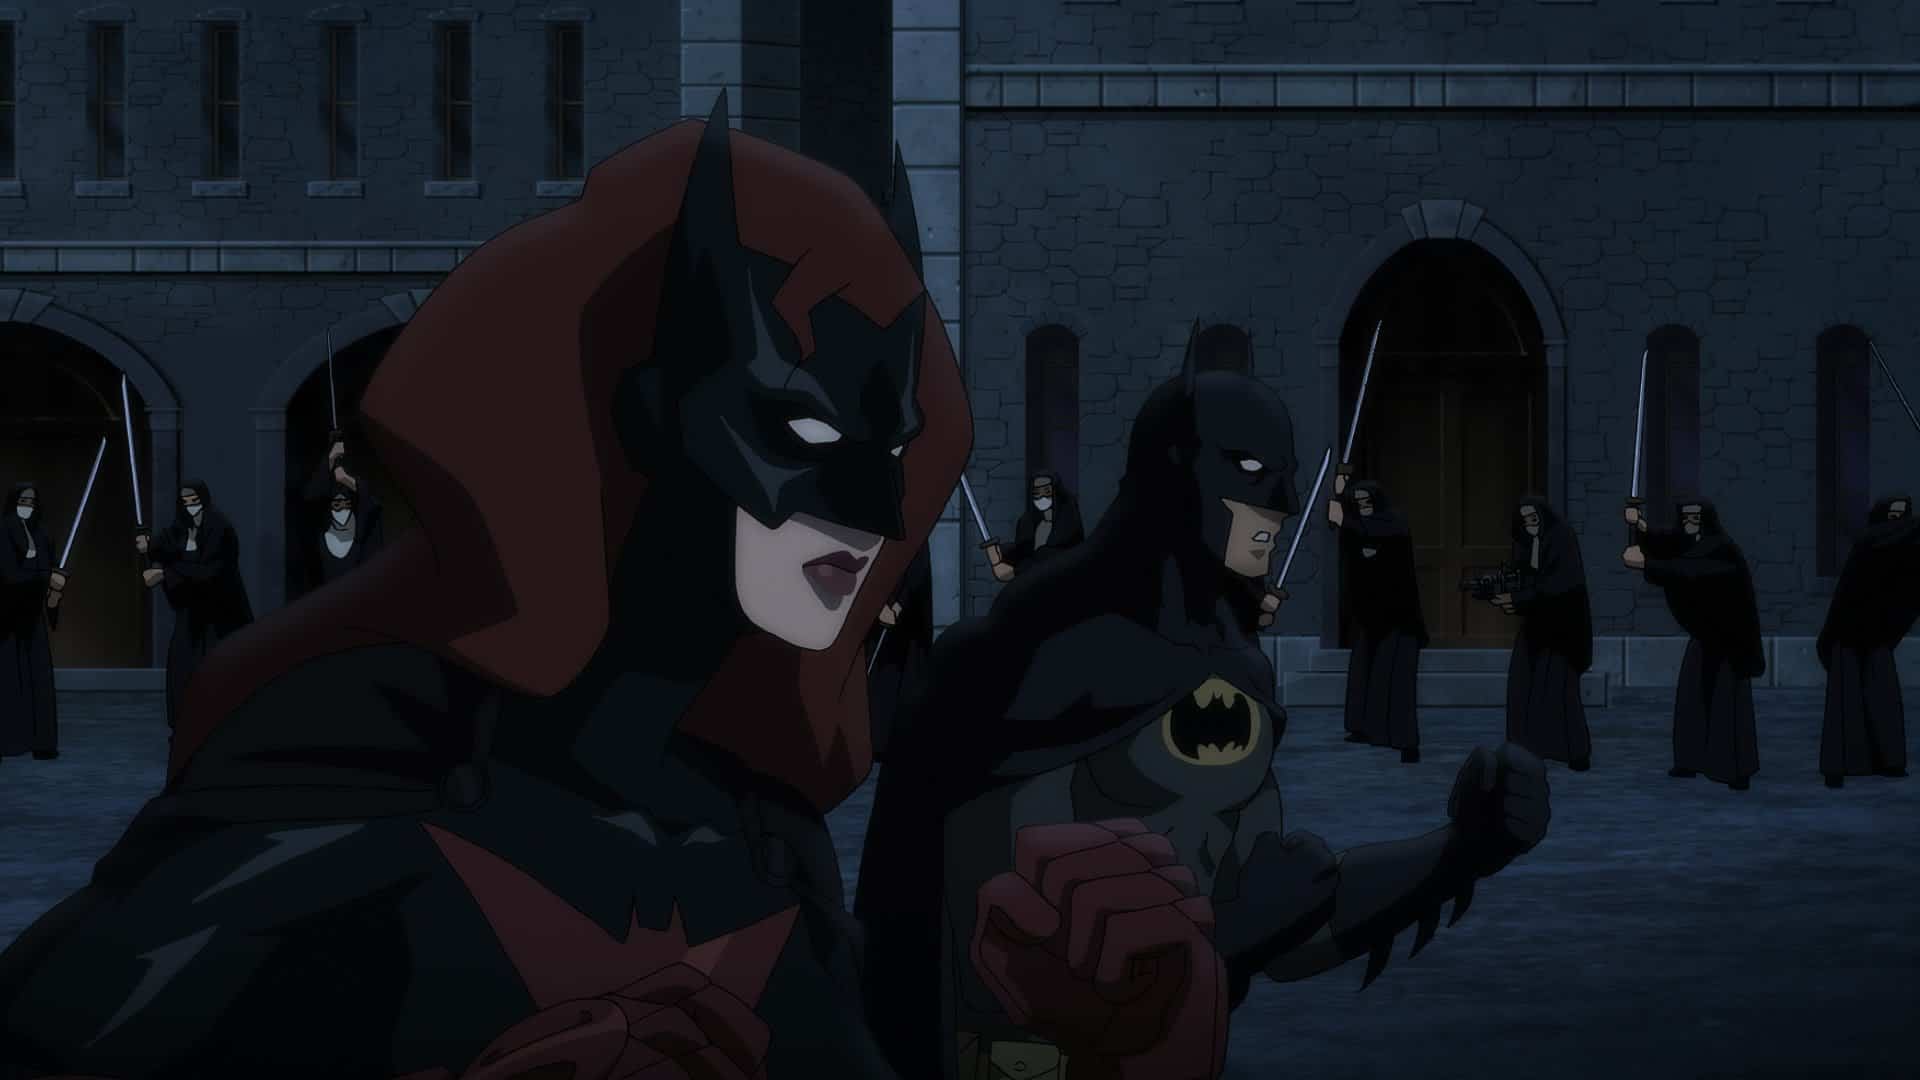 Batman batwoman. Бэтмен: дурная кровь (2016) Робин. Бэтмен дурная кровь Бэтвумен. Бэтгерл Бэтмен дурная кровь.